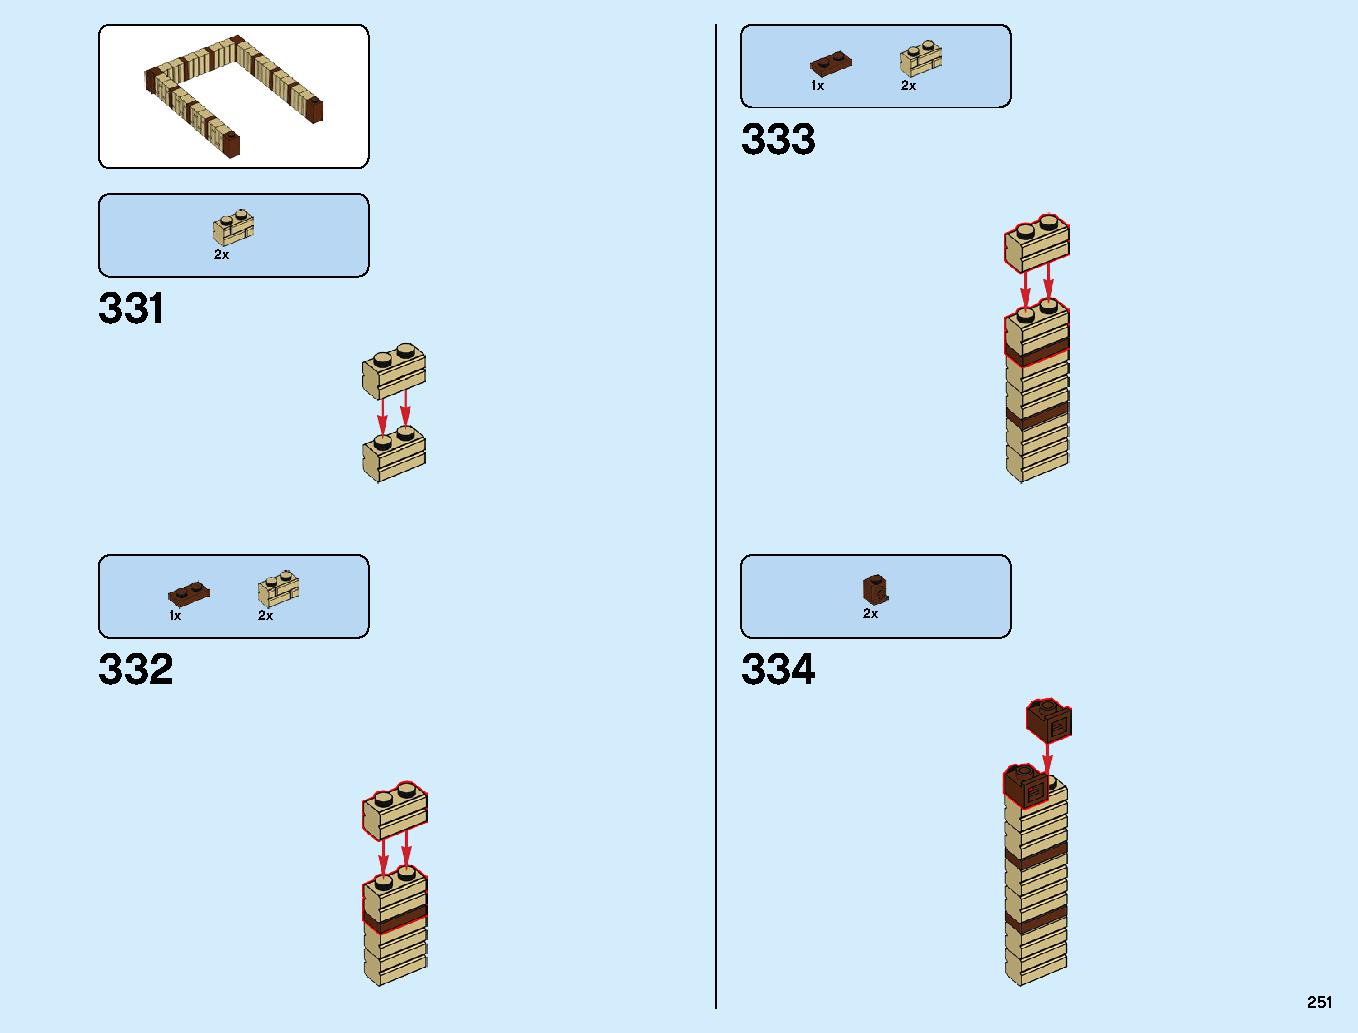 ニンジャゴーシティ・ポートパーク 70657 レゴの商品情報 レゴの説明書・組立方法 251 page